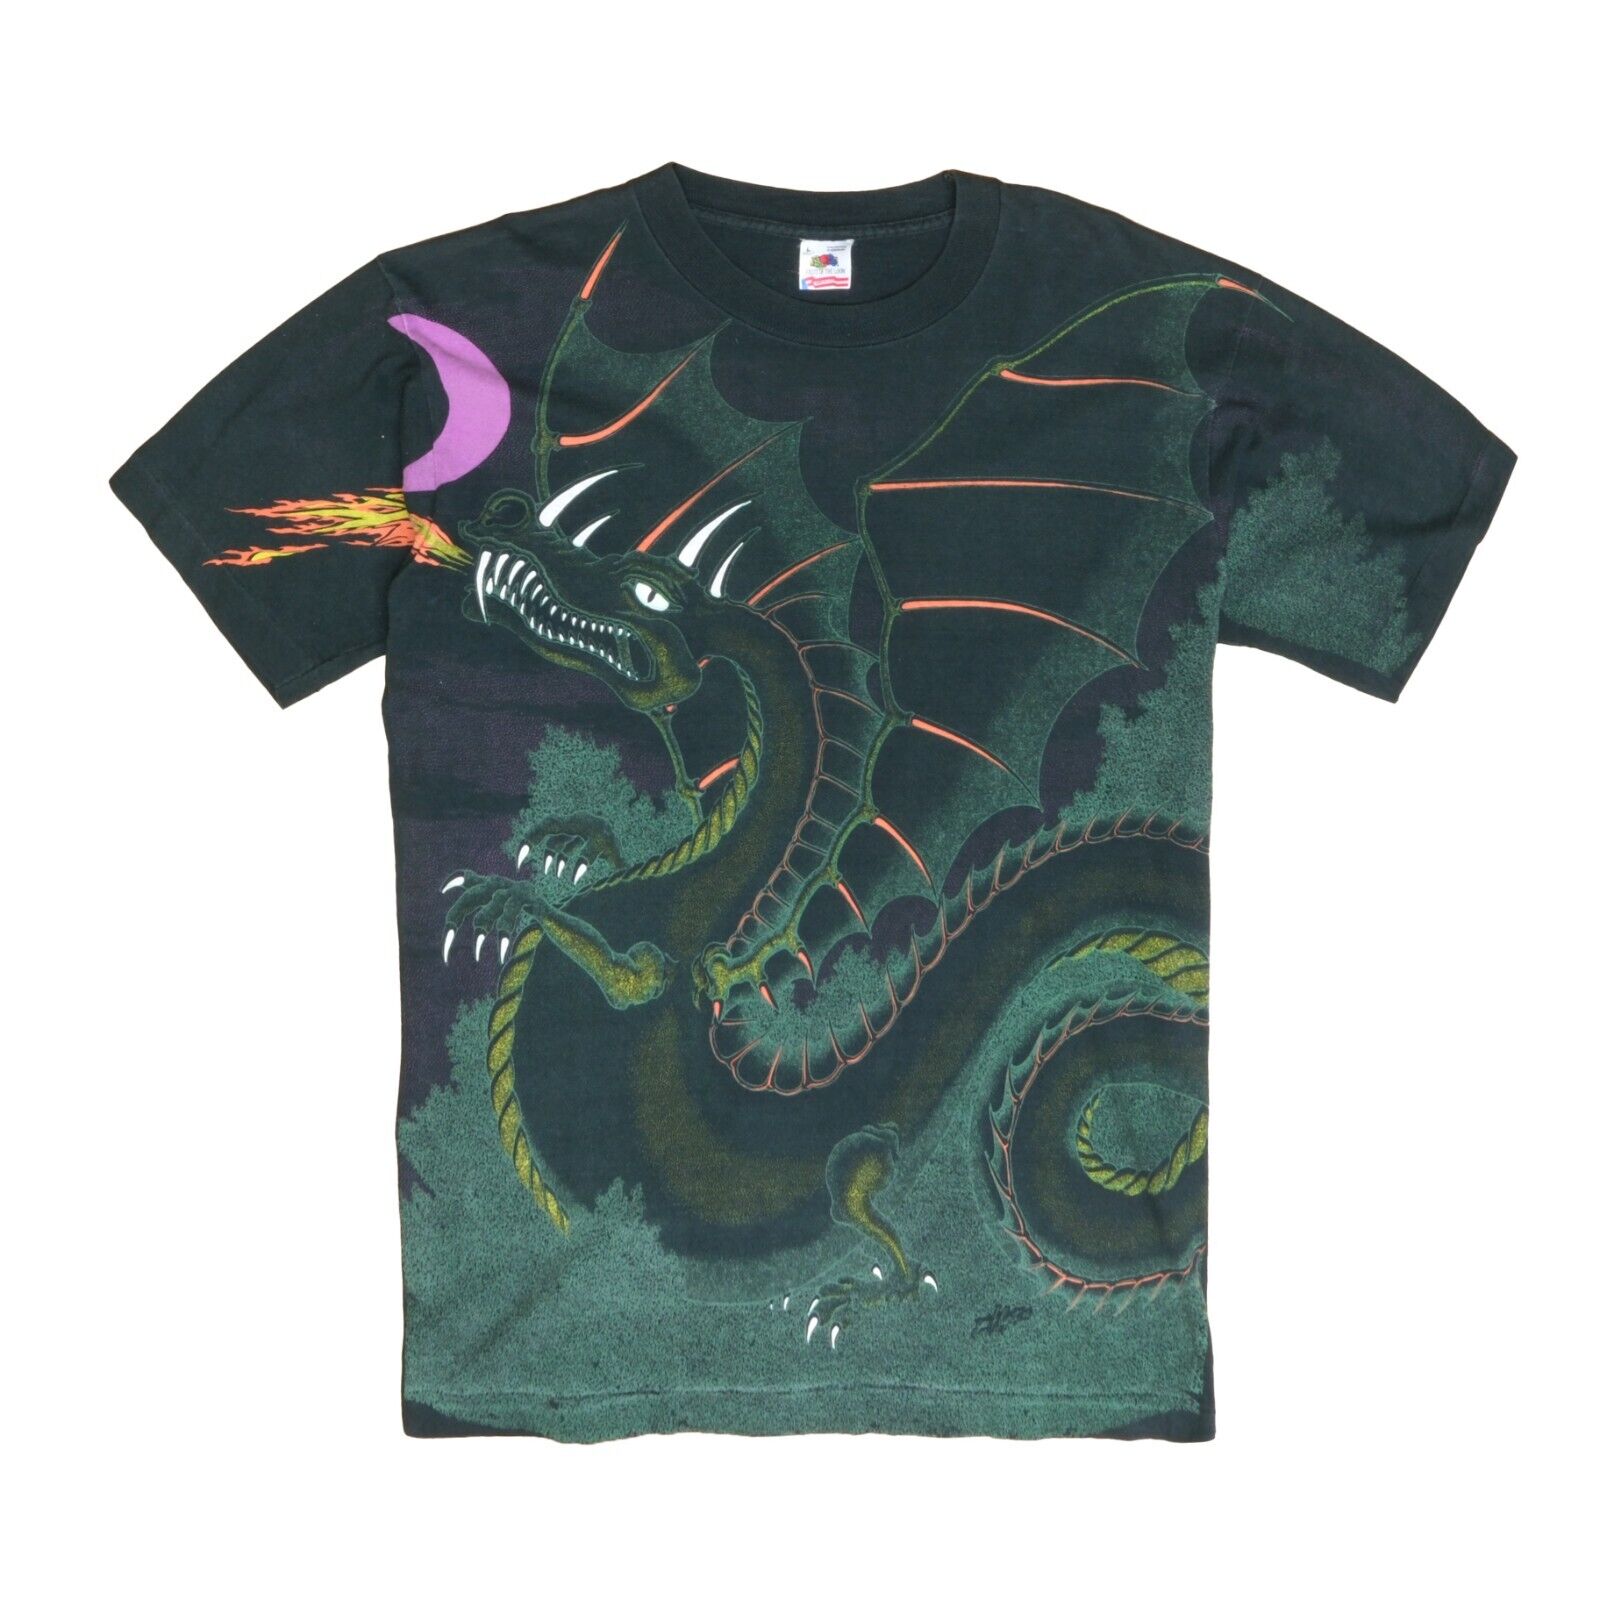 Vintage Dragon Castle T-Shirt Size Large Black Fantasy All Over